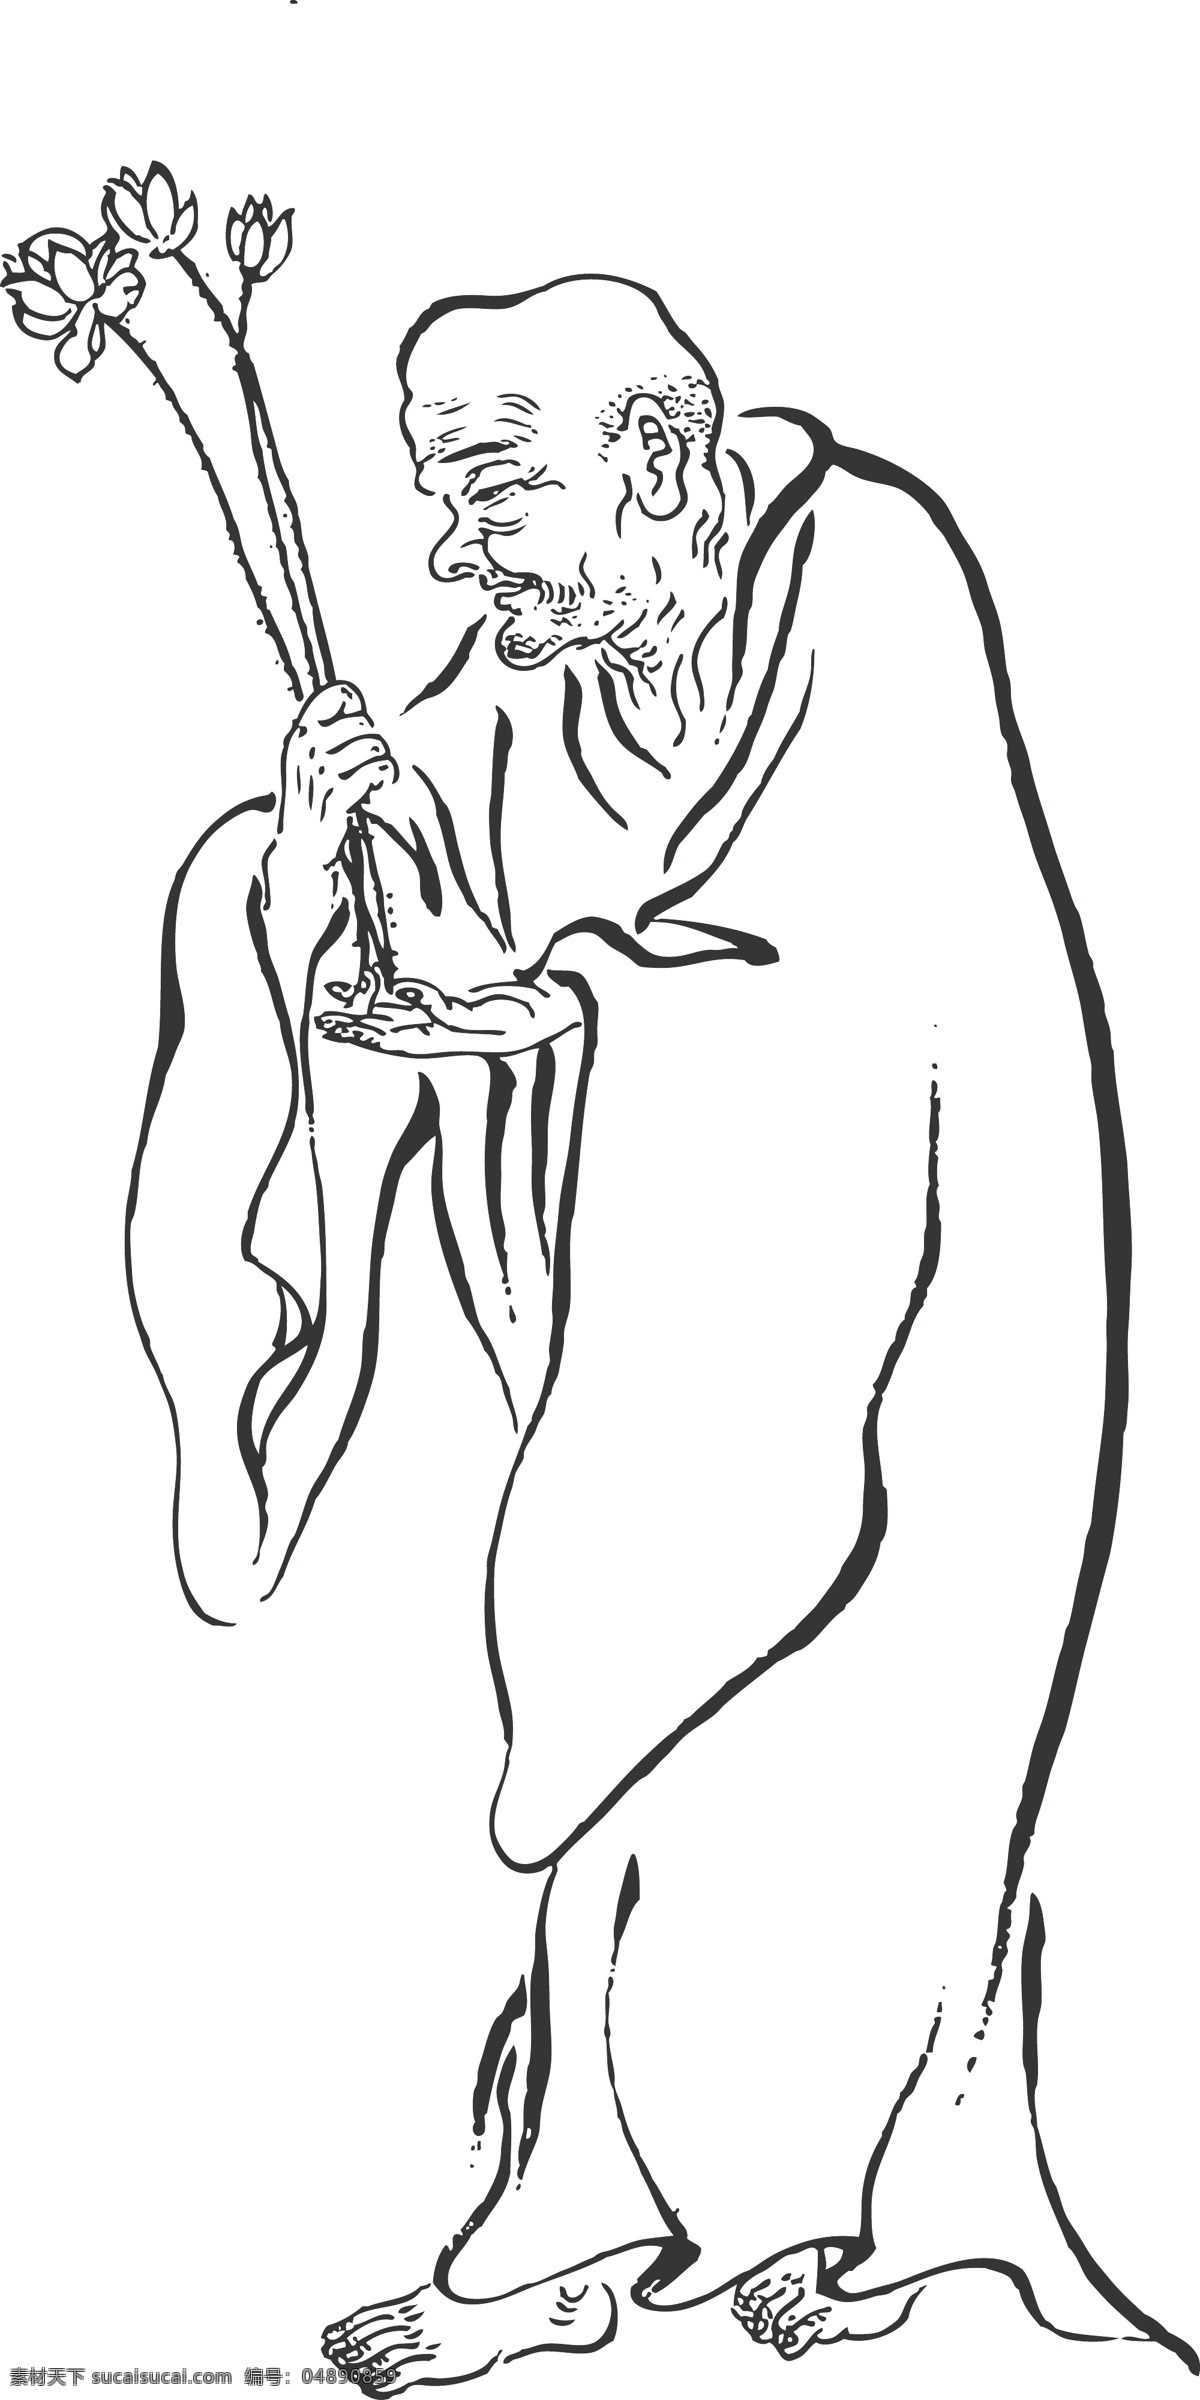 莲花罗汉 人物 手持罗汉 站立 线条 矢量 传统 民俗 装饰 插画 白描 罗汉白描图 文化艺术 宗教信仰